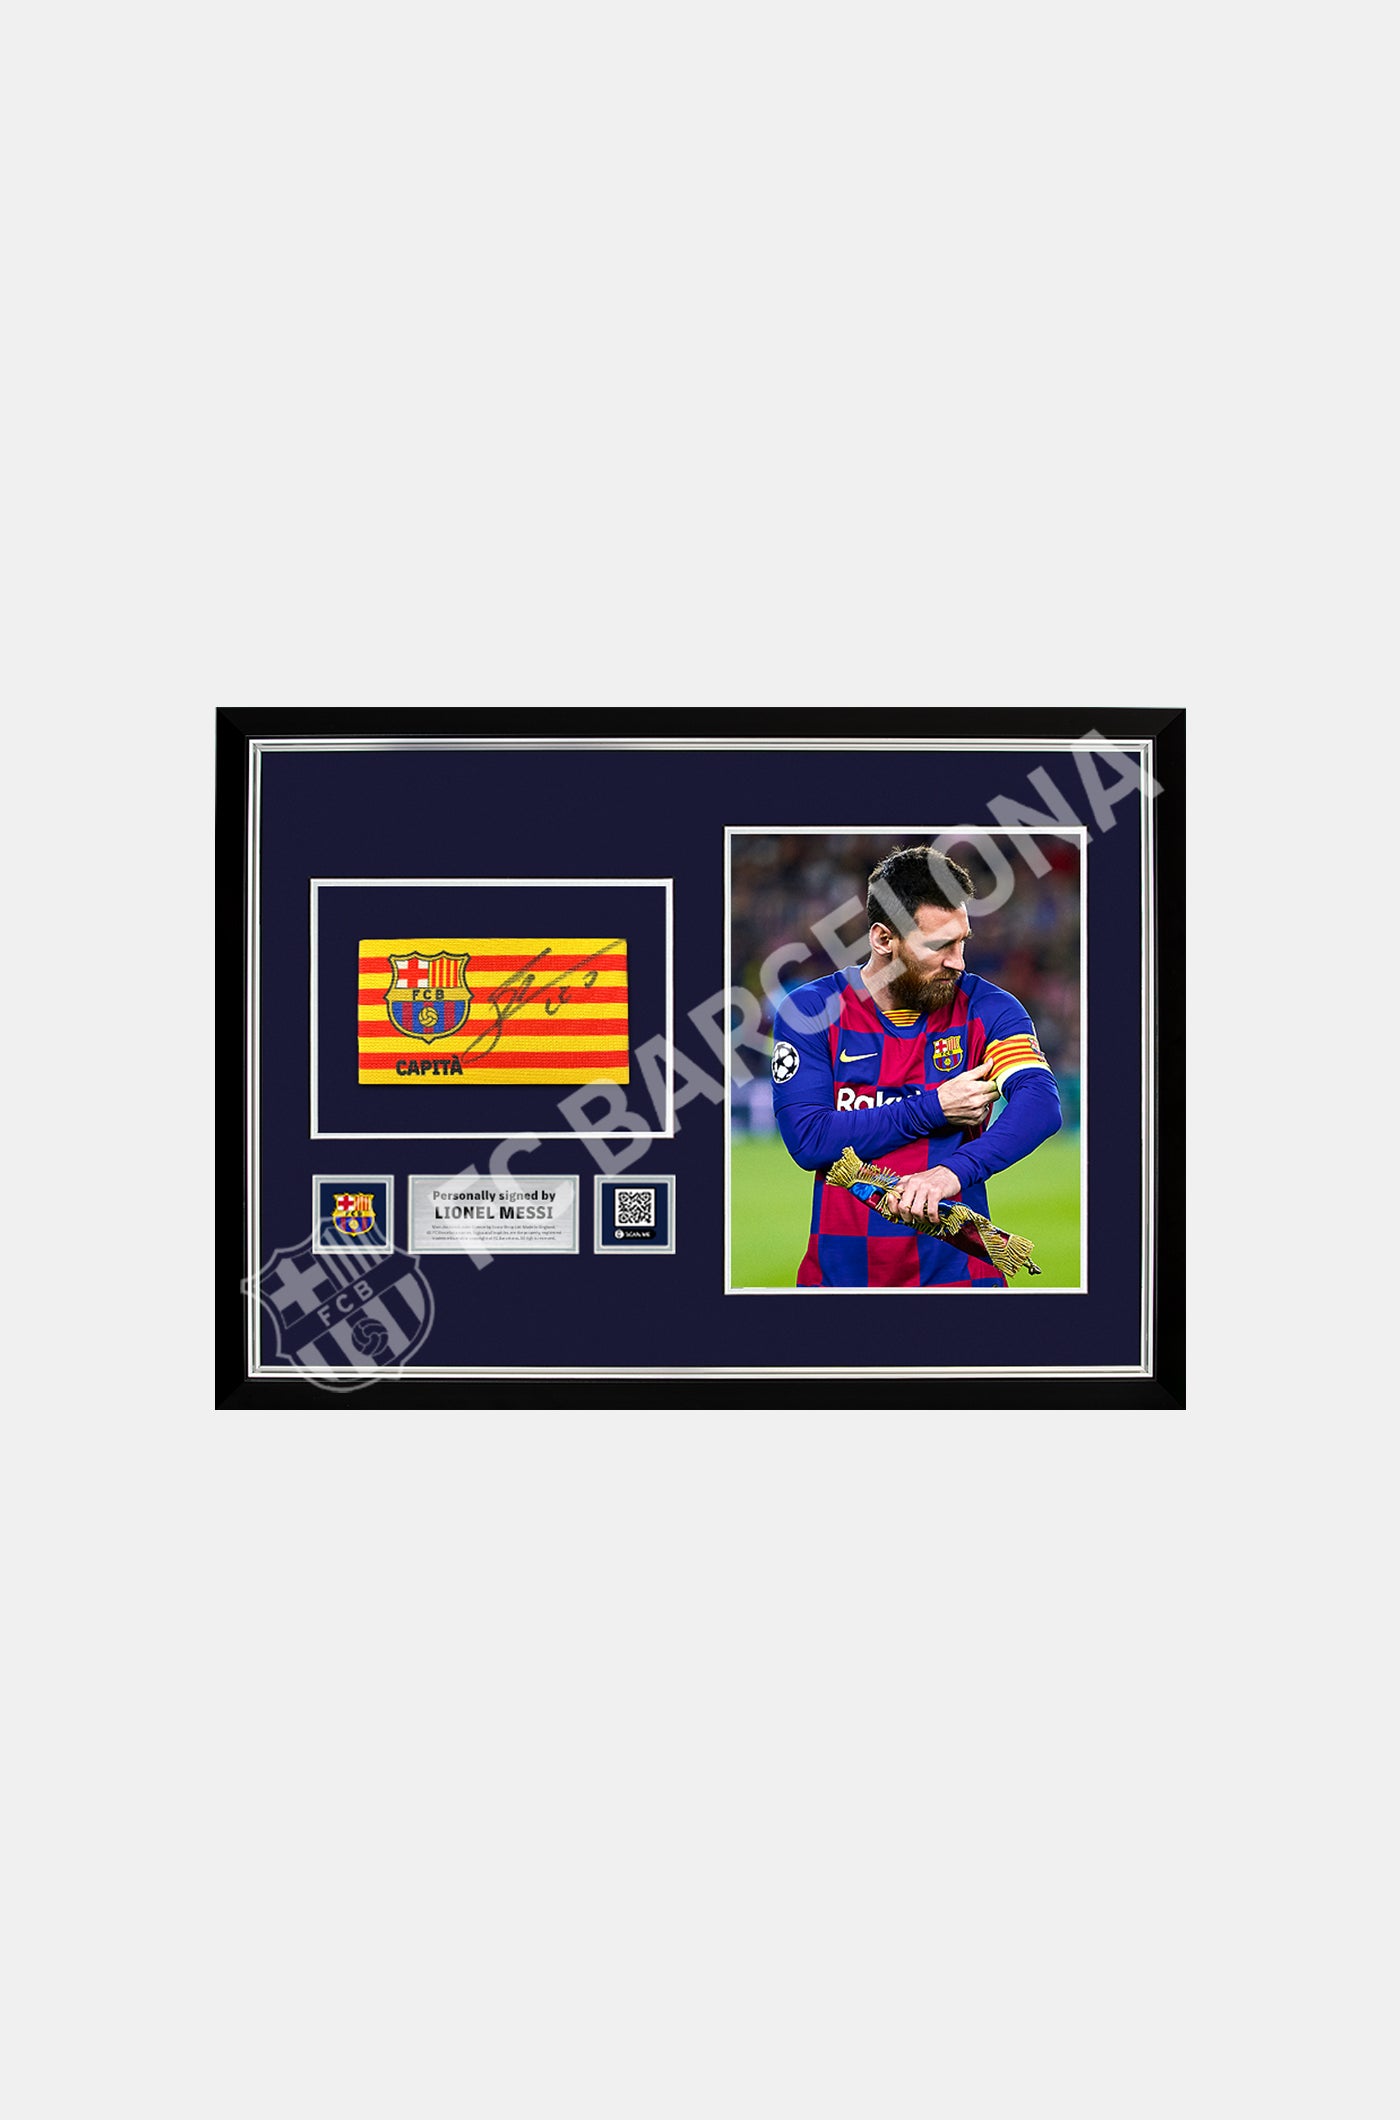 Braçalet de capità del FC Barcelona signat per Lionel Messi i enmarcat